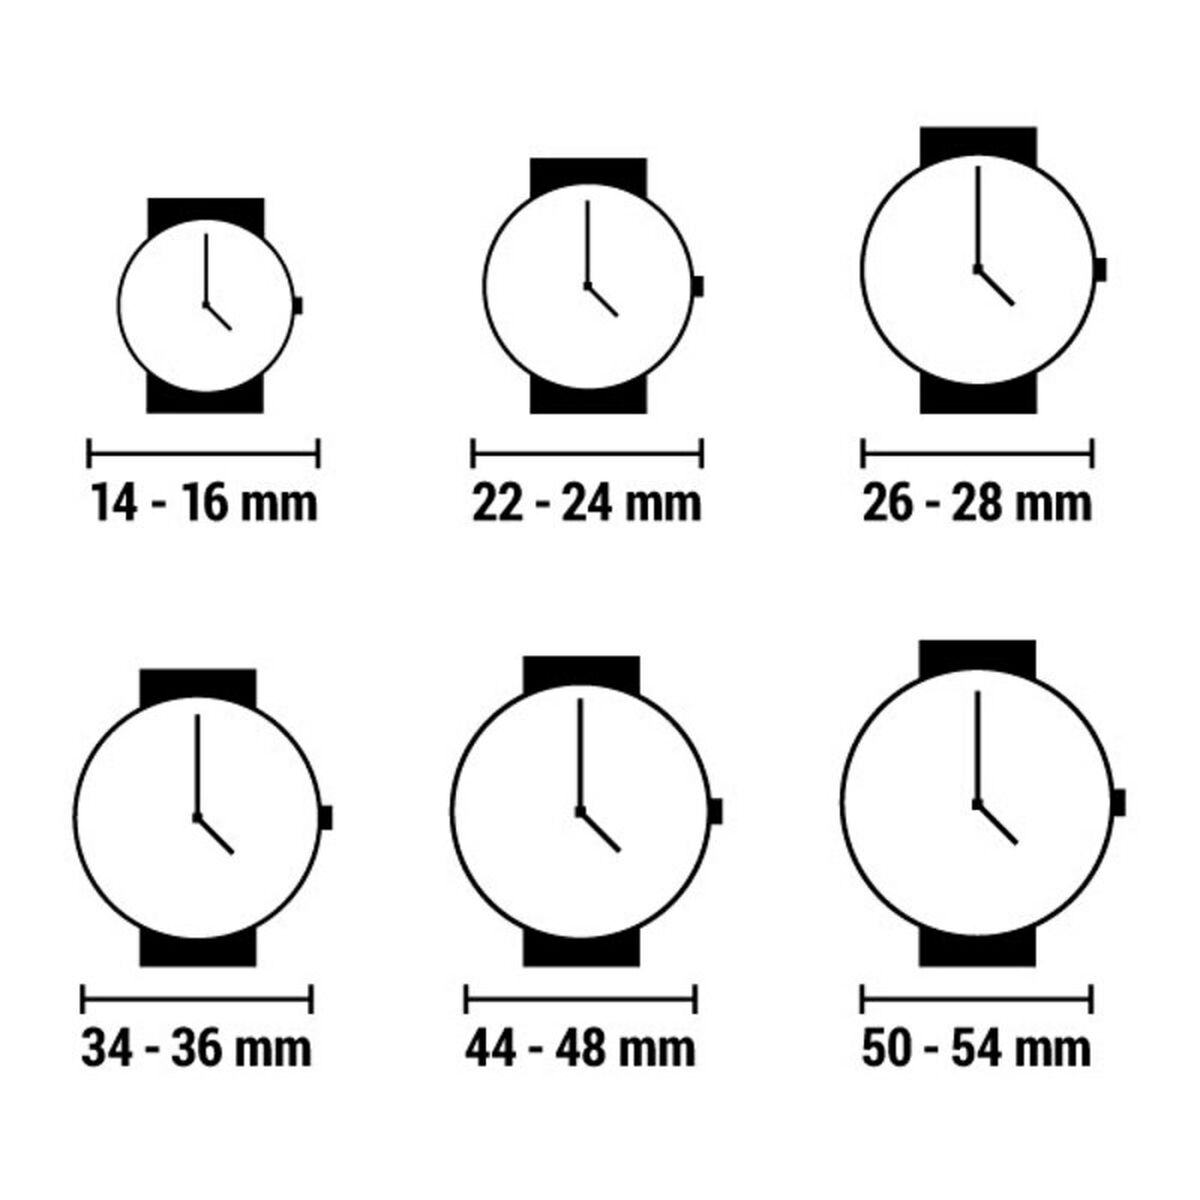 Horloge Dames Watx & Colors RWA1804 (Ø 45 mm)